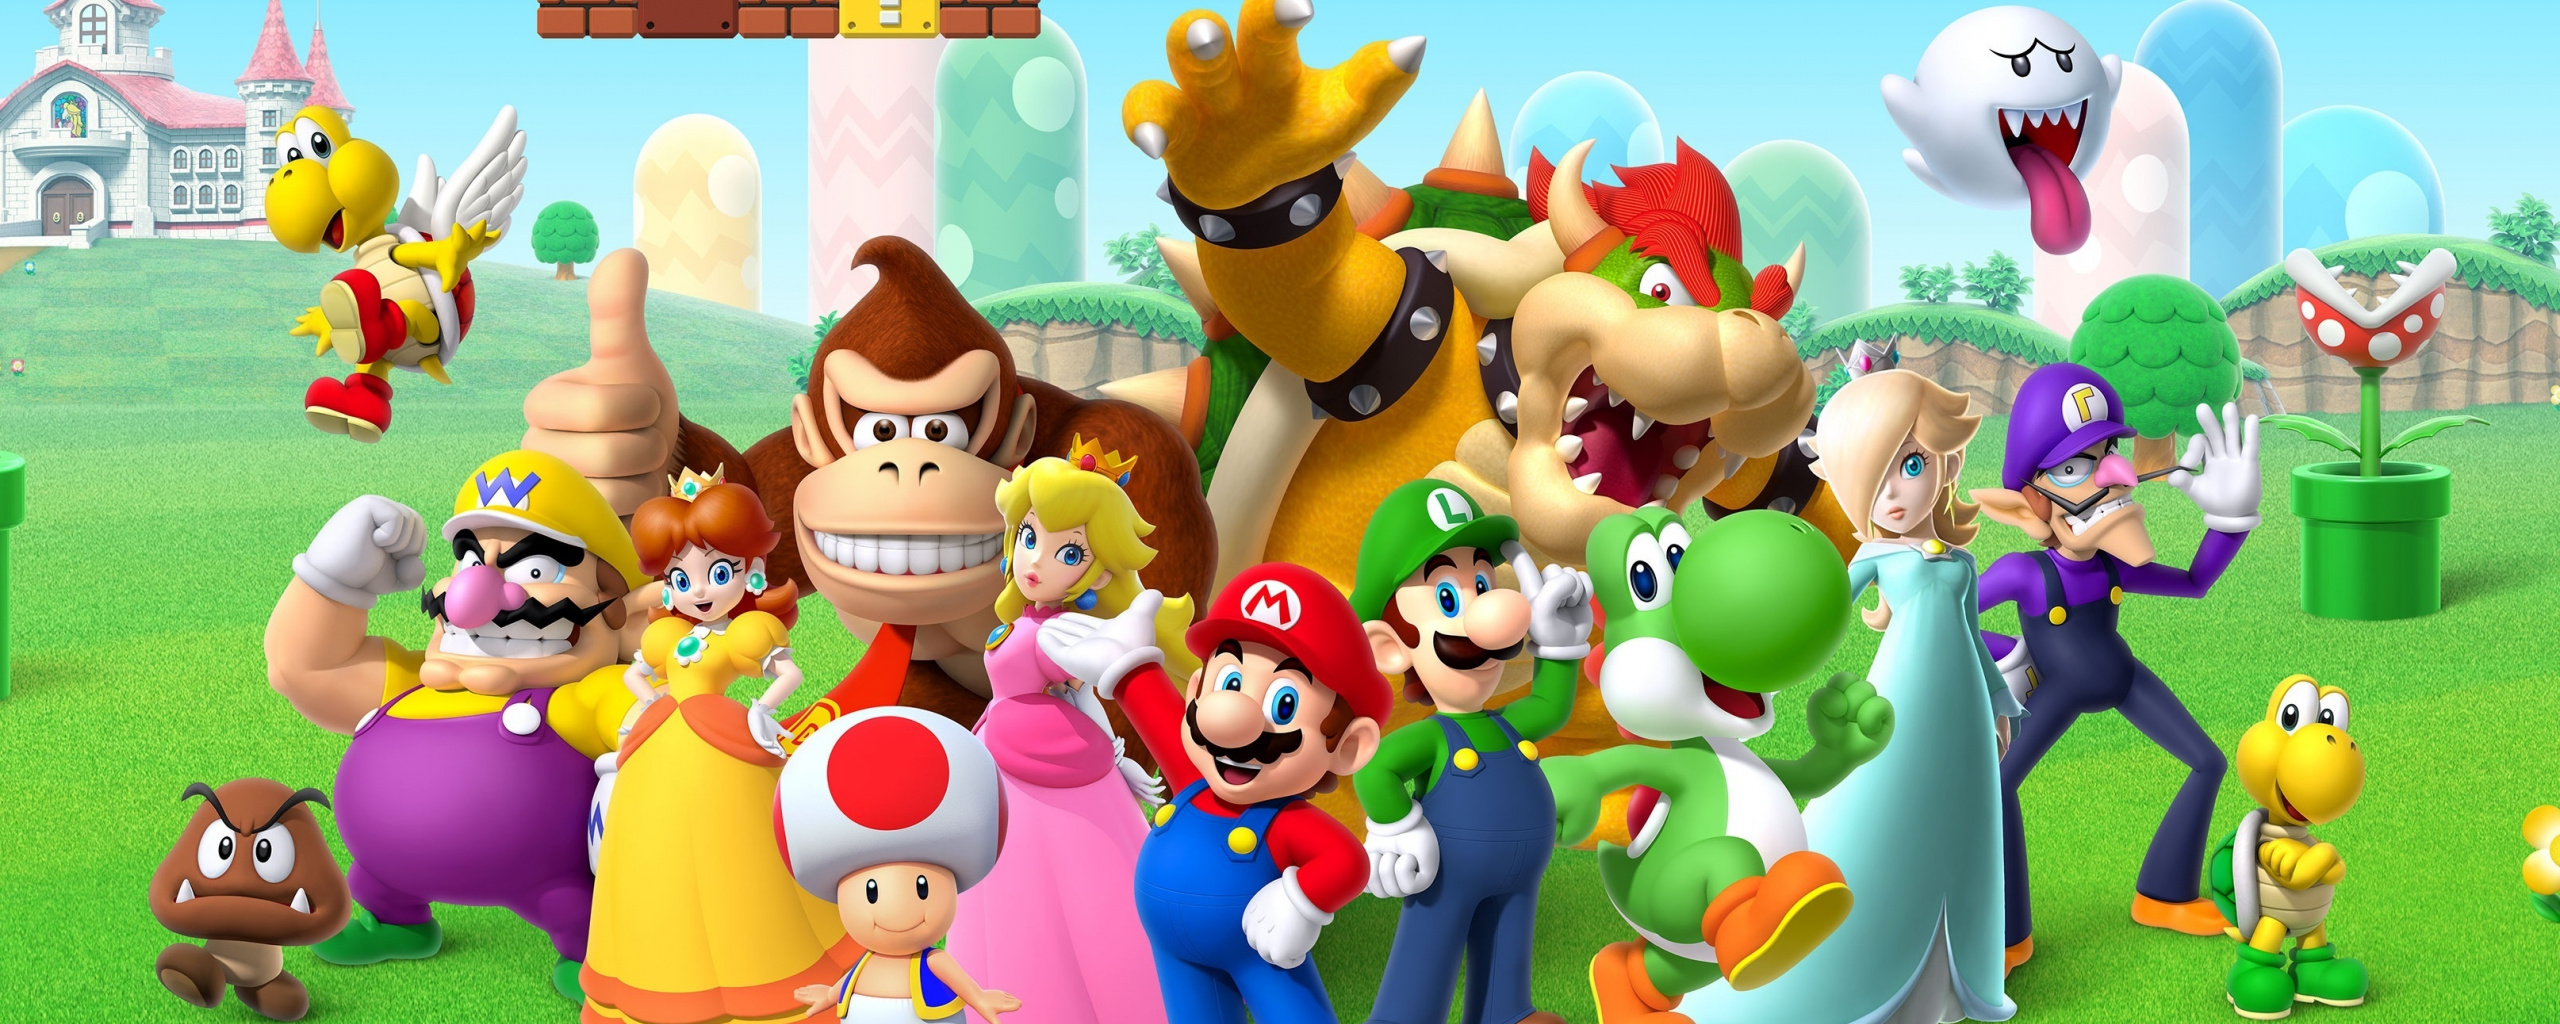 Super Mario Bros - Mario Bros Background - HD Wallpaper 